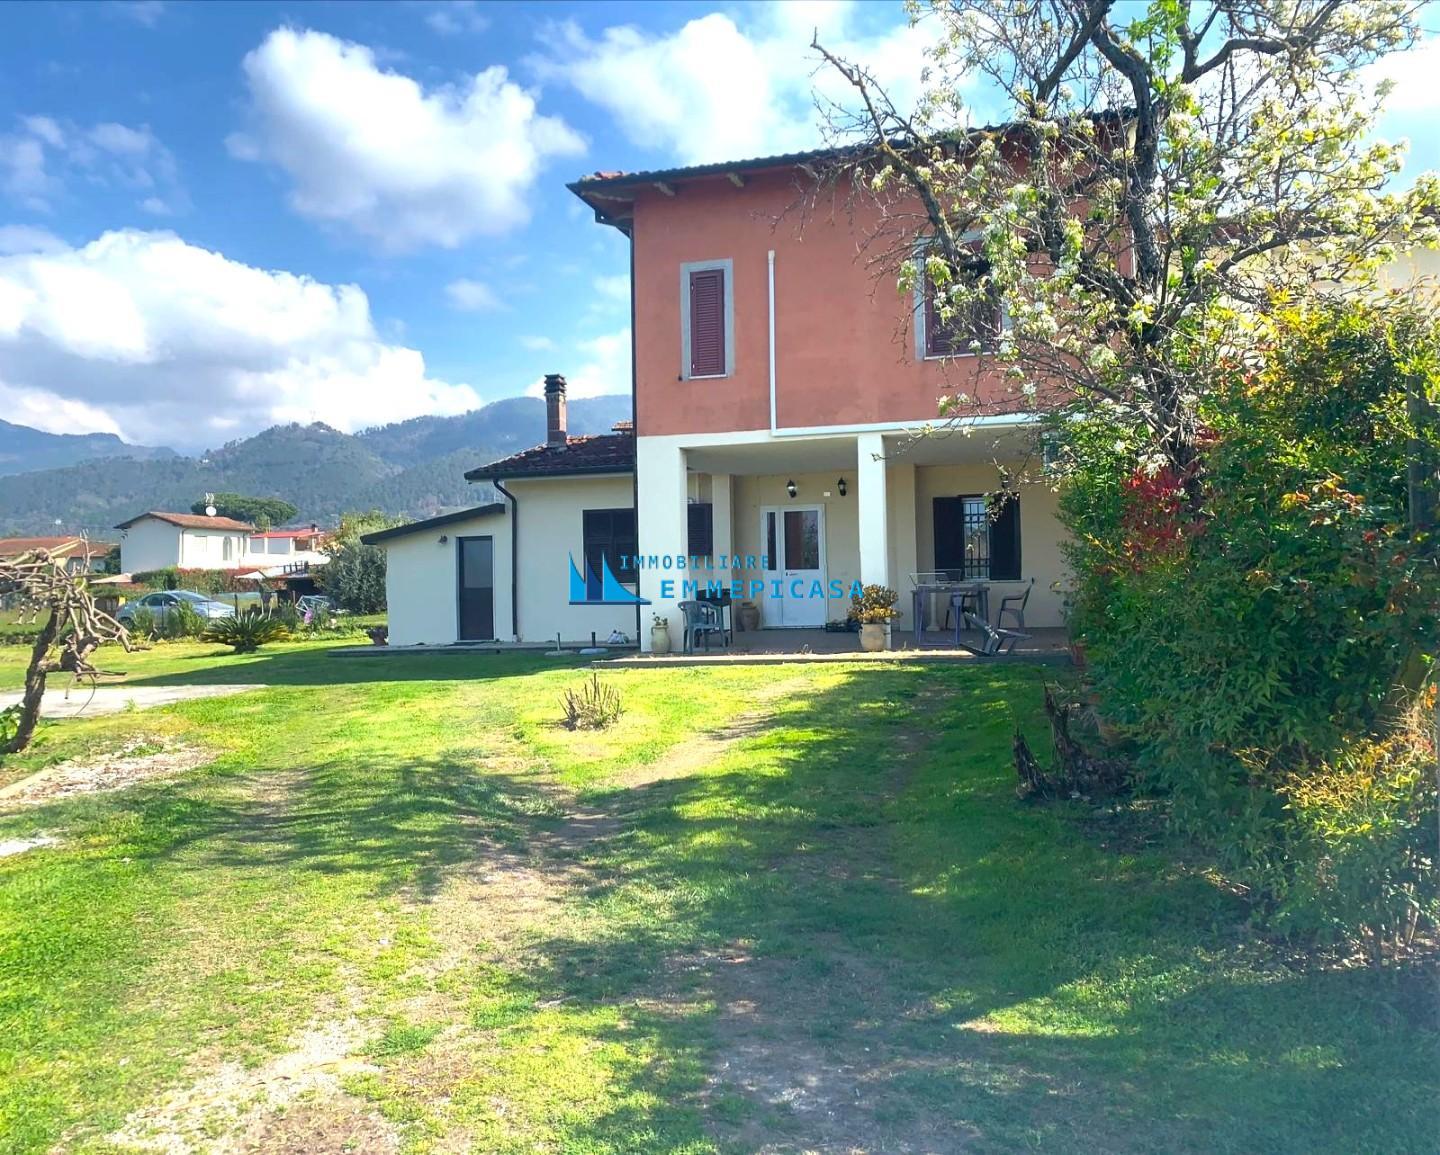 Villa Bifamiliare arredata in affitto, Montignoso cervaiolo